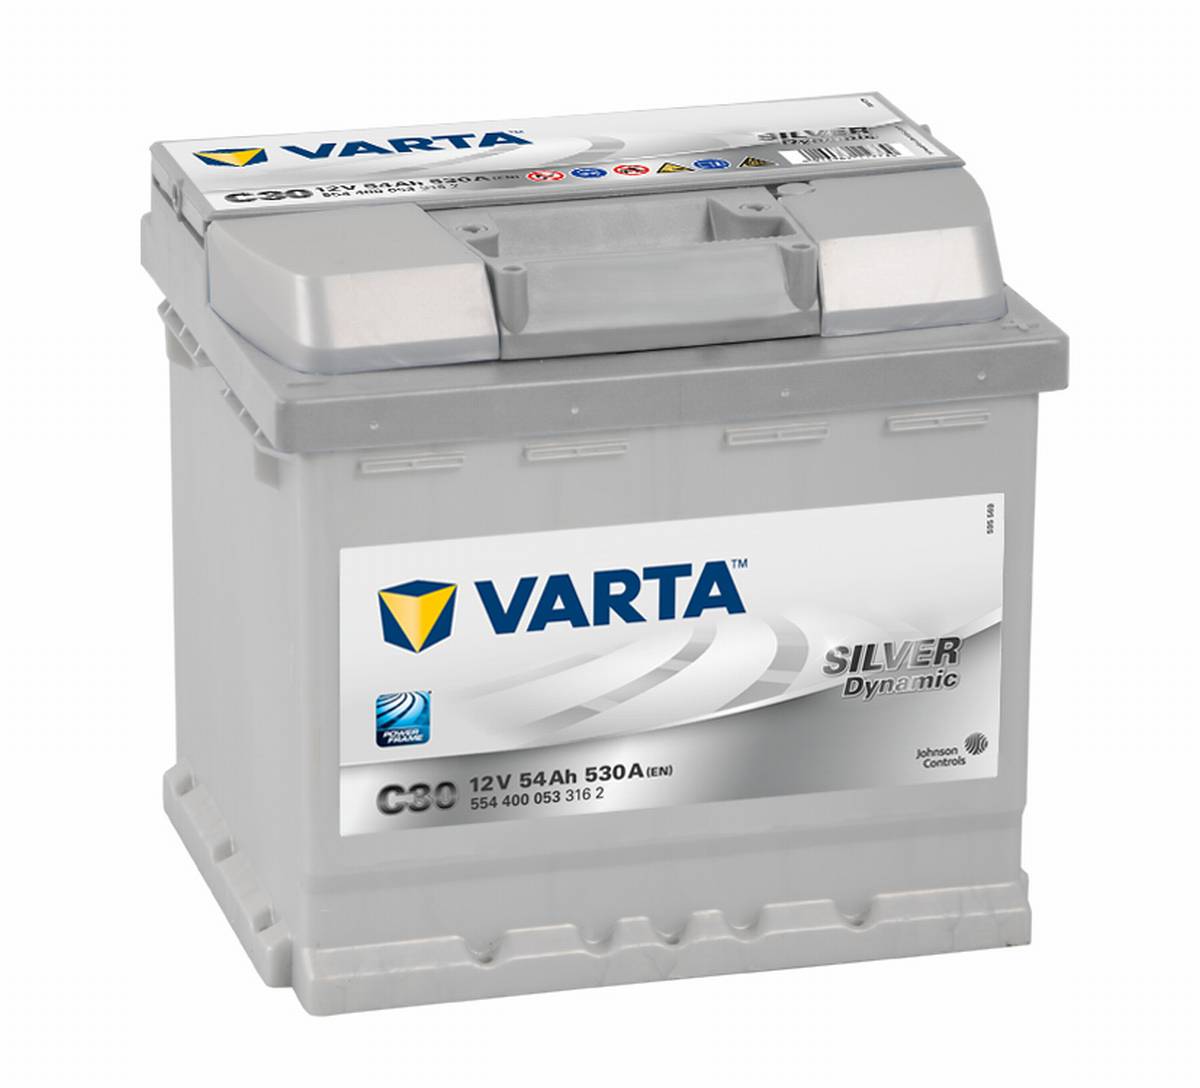 VARTA C30 Silver Dynamic 12V 54Ah 530A batteria per auto 554 400 053